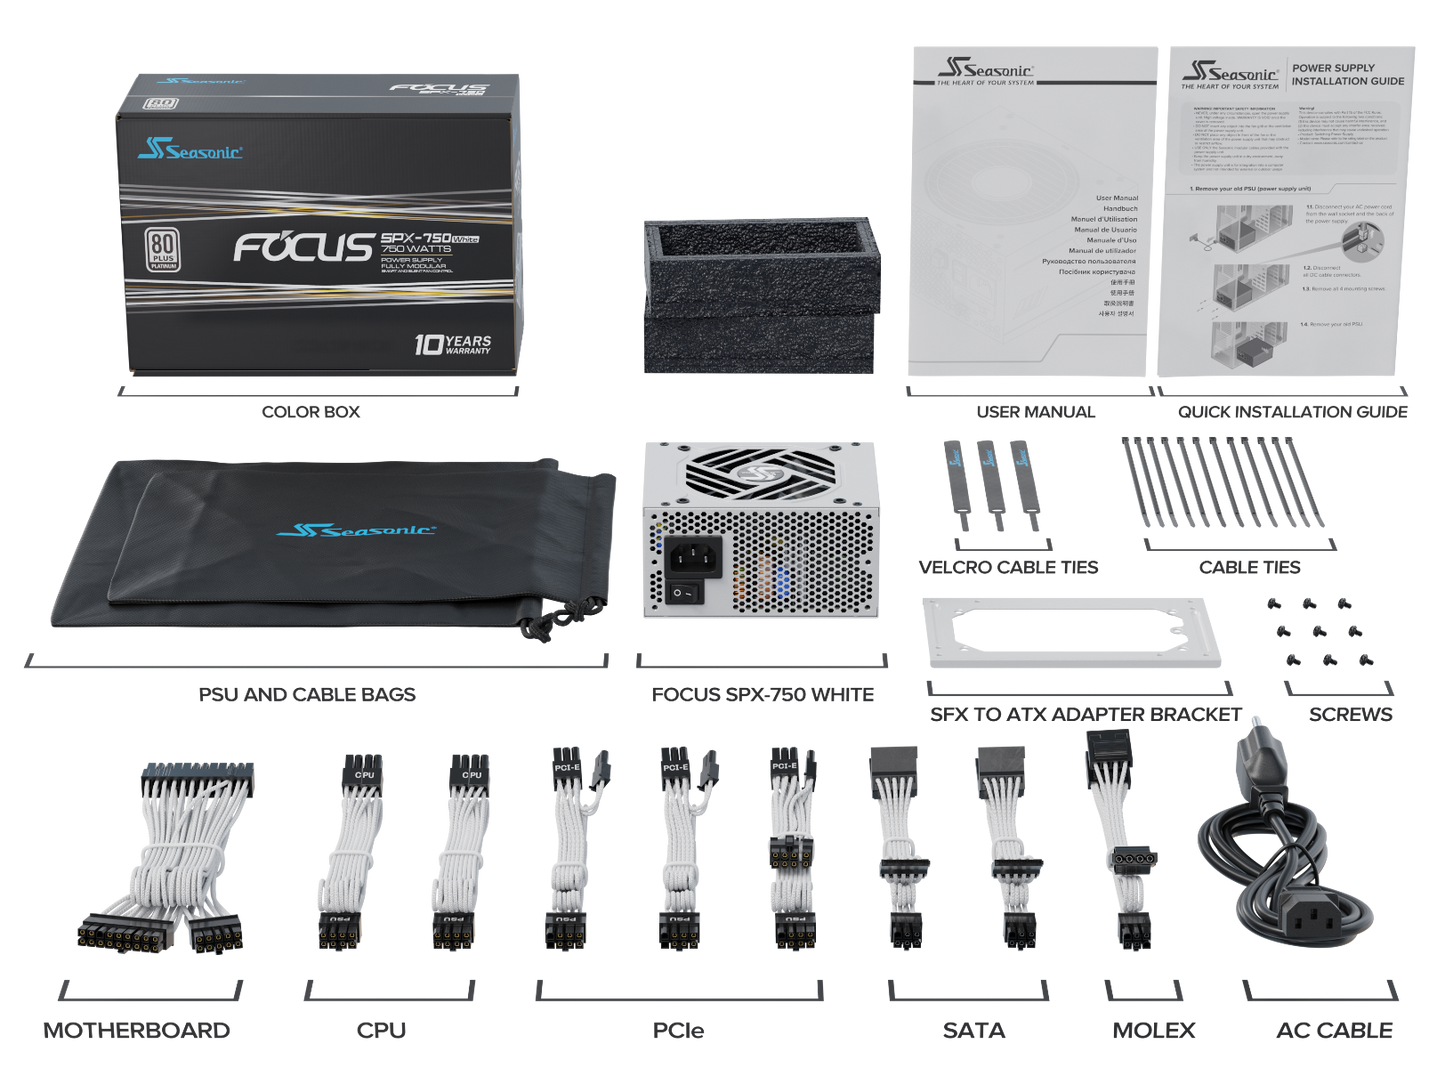 SeaSonic Focus SPX-750 SFX 12 V, ATX 12 V, Fully Modular, 80 PLUS Platinum Certified, White (SSR-750SPX White)